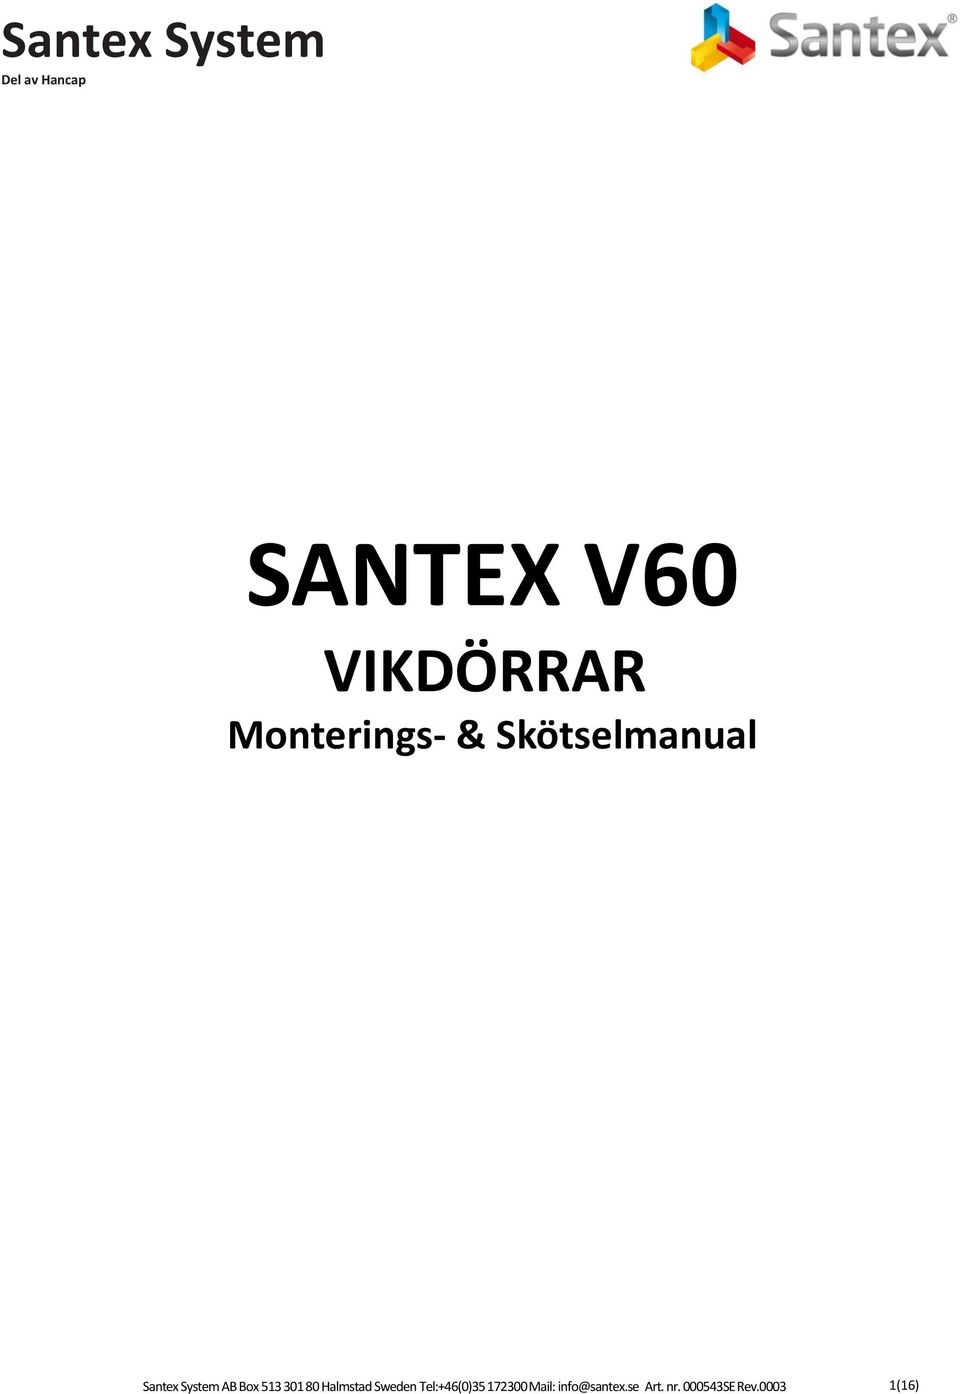 SANTEX V60 VIKDÖRRAR Monterings- & Skötselmanual - PDF Gratis nedladdning